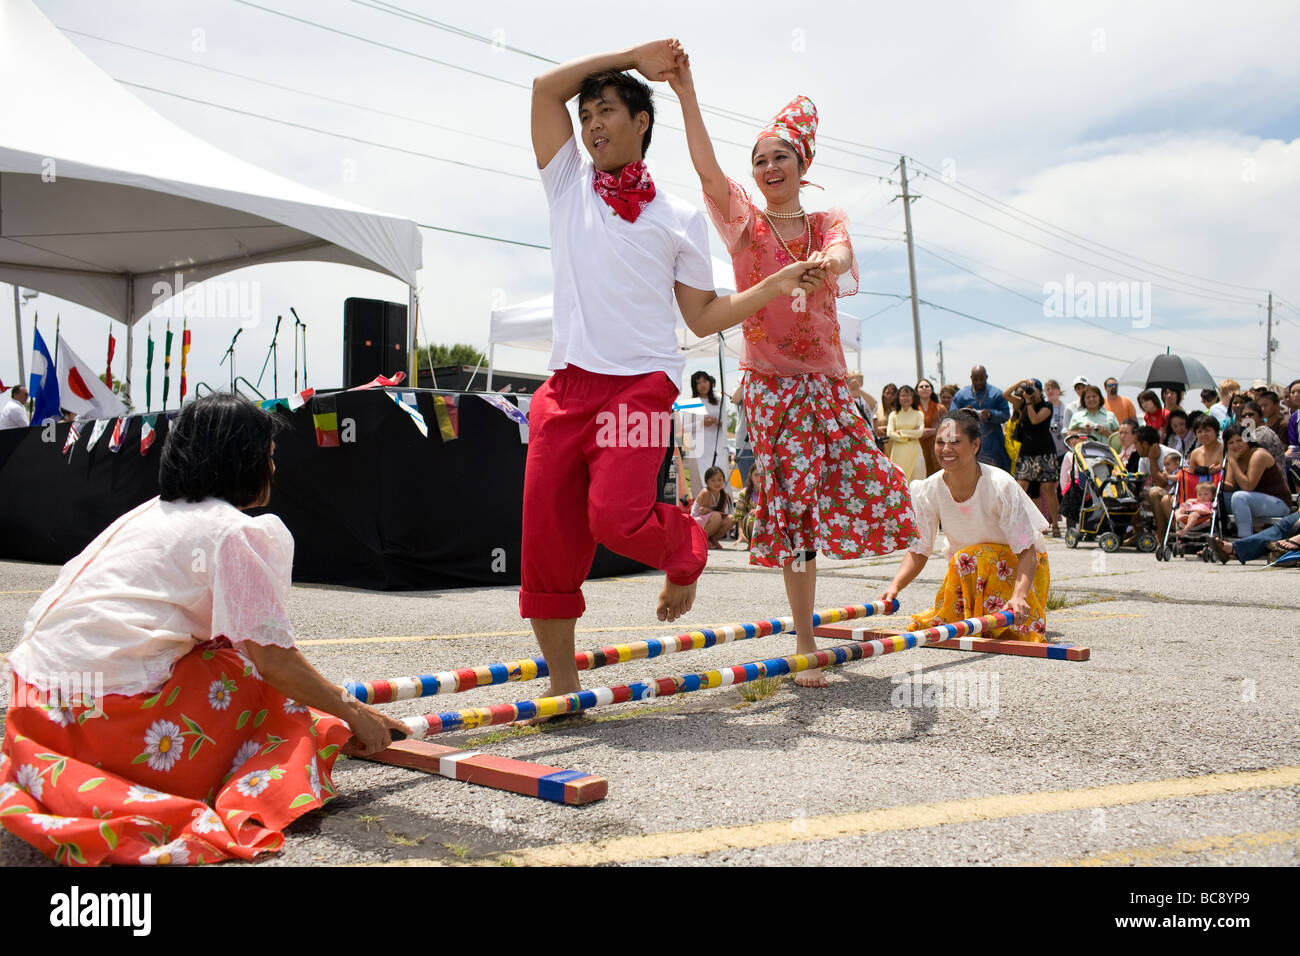 Les philippins effectuer la danse traditionnelle Tinikling devant un public lors d'un festival dans la région de Rogers, Arkansas, États-Unis . Banque D'Images